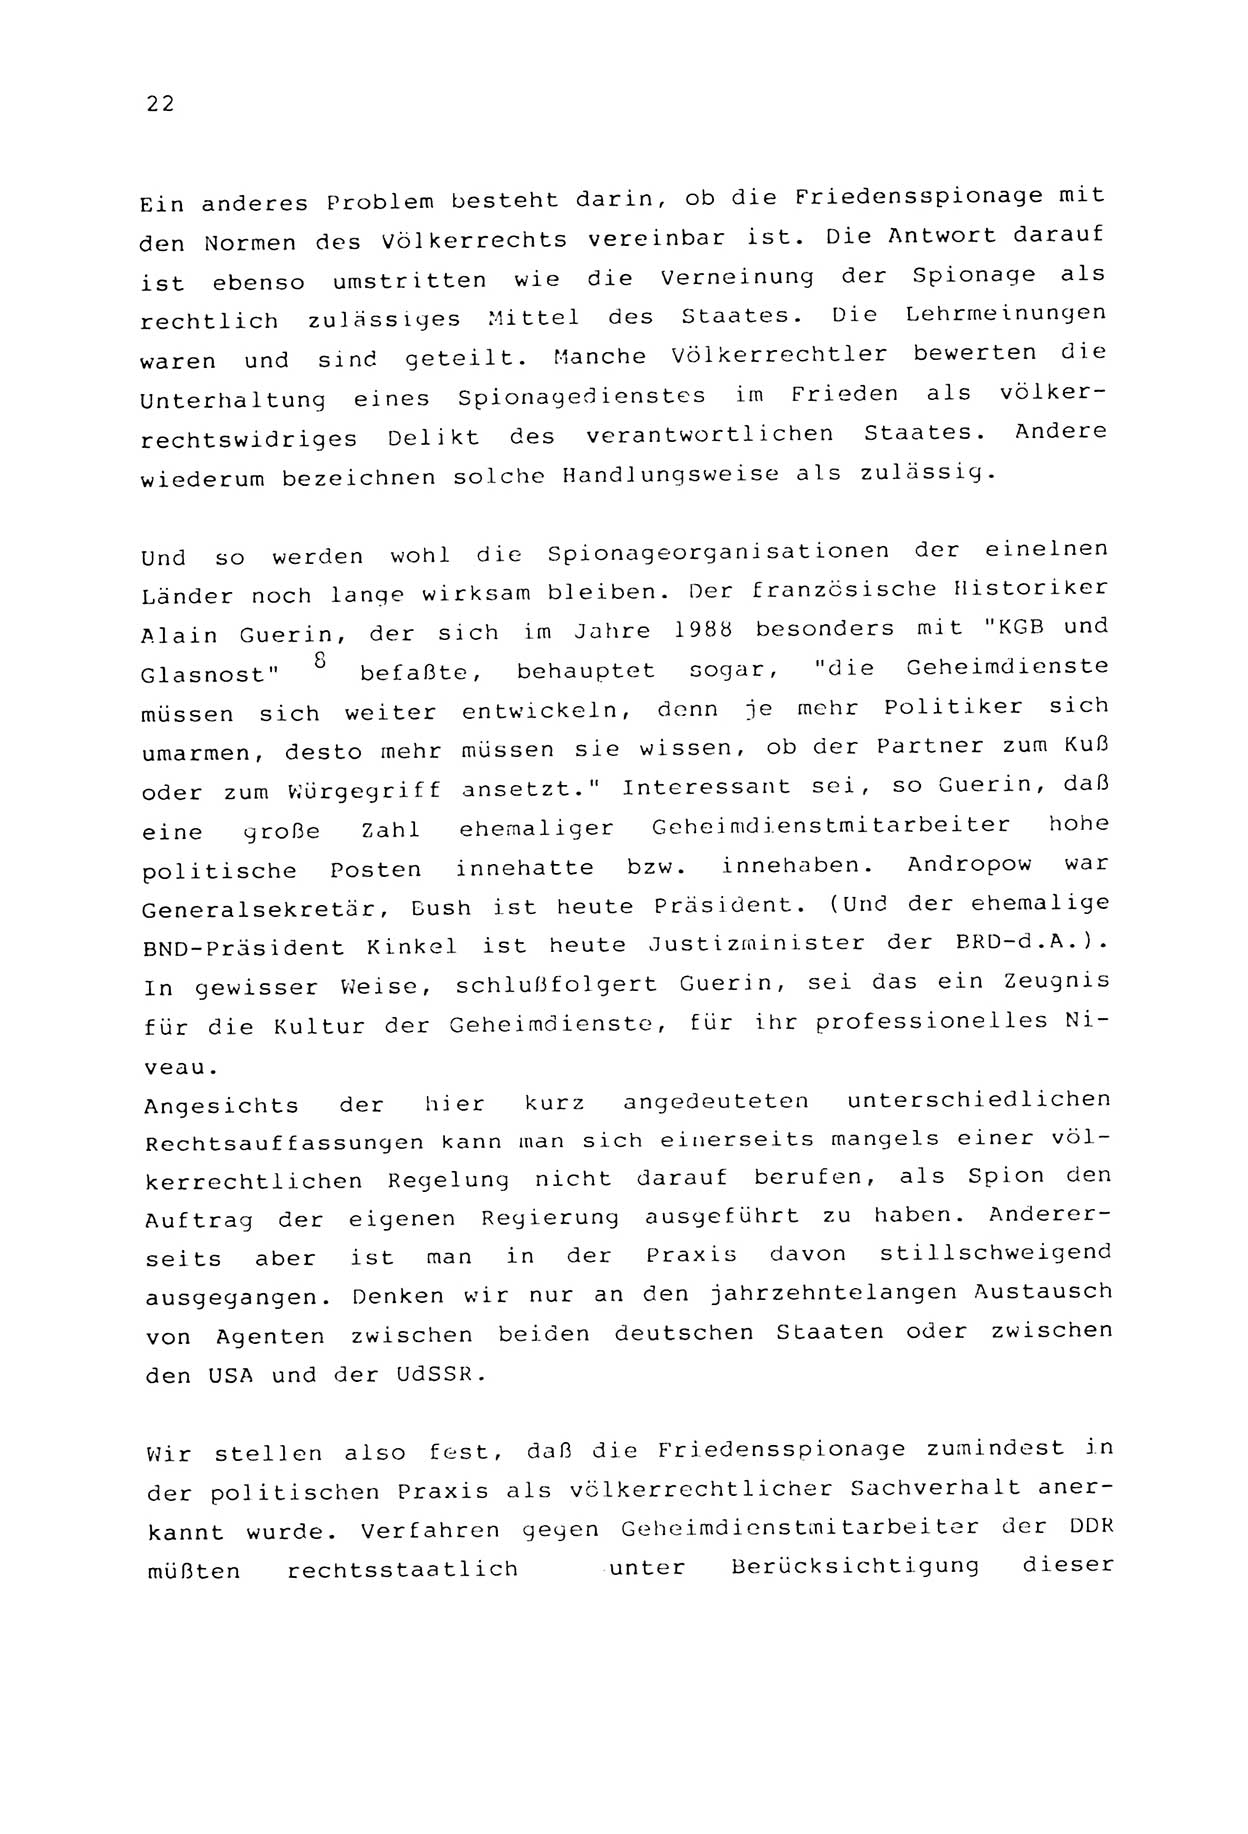 Zwie-Gespräch, Beiträge zur Aufarbeitung der Stasi-Vergangenheit [Deutsche Demokratische Republik (DDR)], Ausgabe Nr. 2, Berlin 1991, Seite 22 (Zwie-Gespr. Ausg. 2 1991, S. 22)